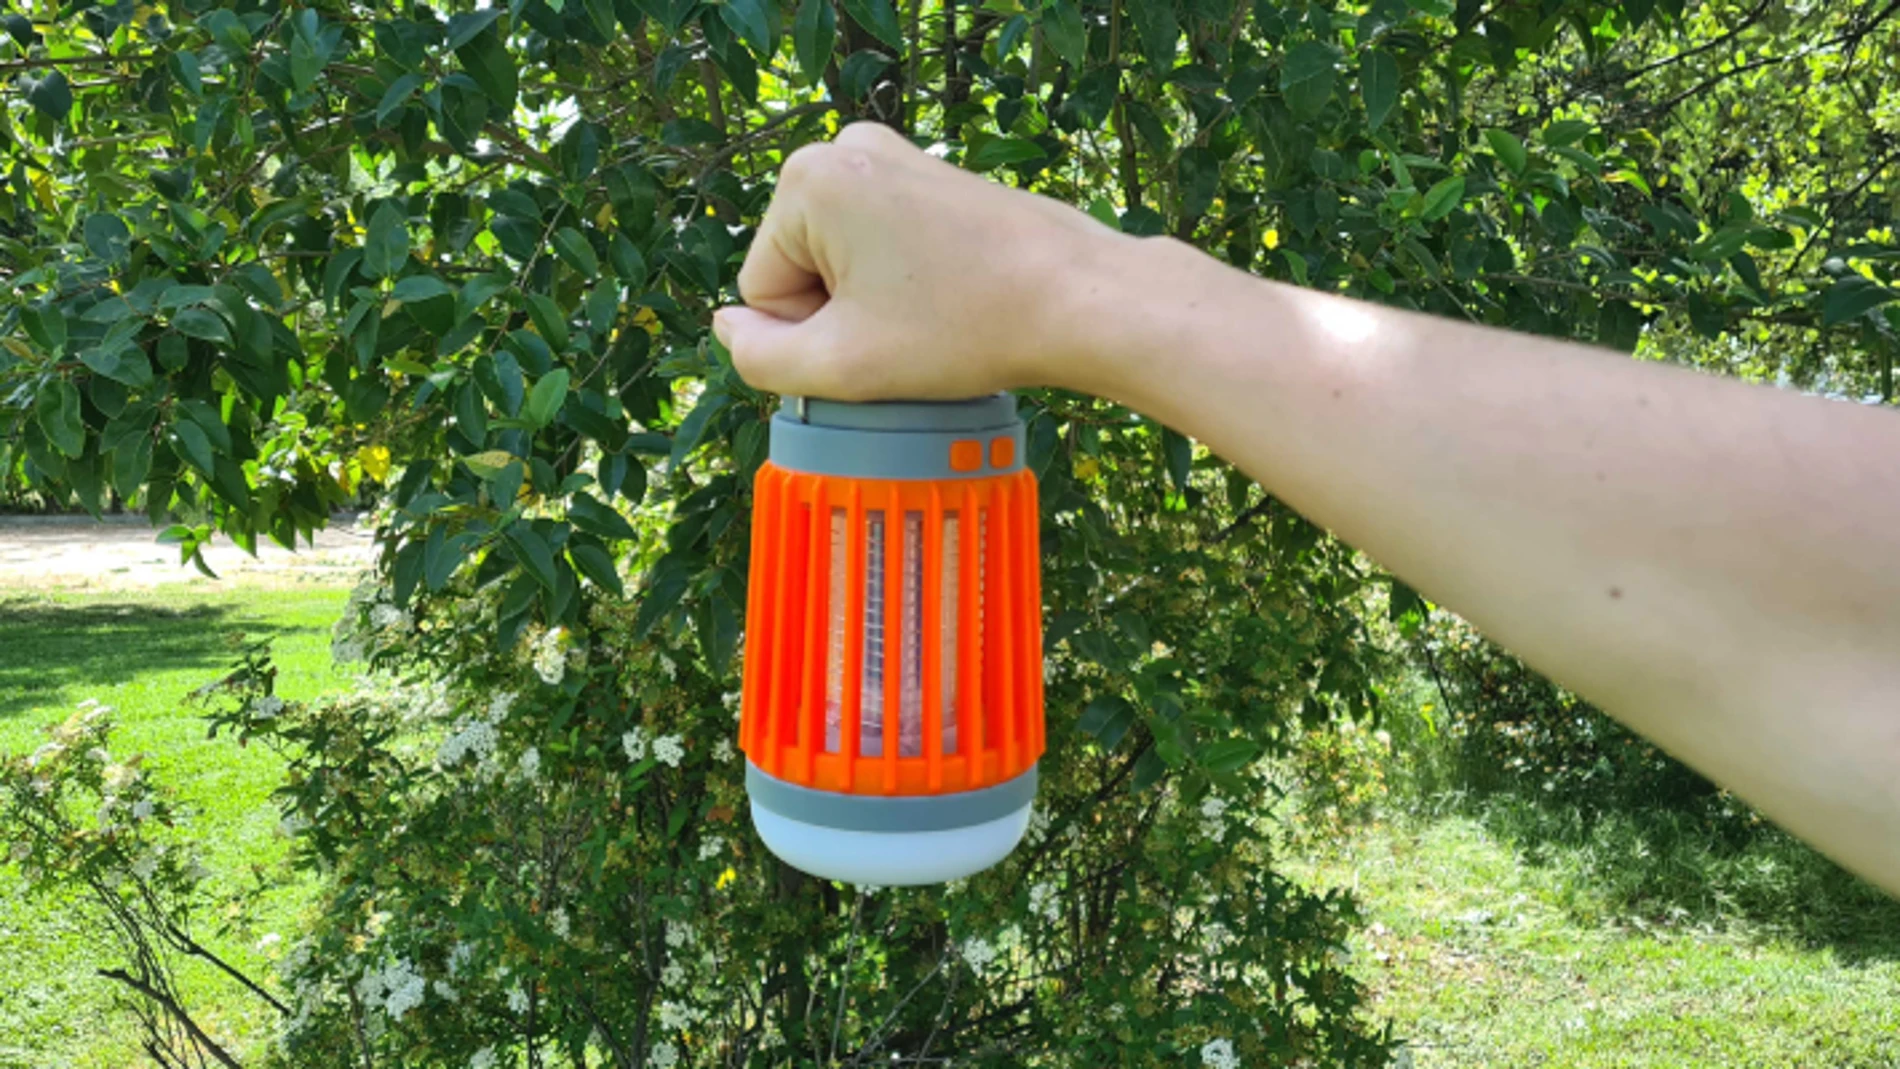 Oferta en lámpara antimosquitos sin productos químicos